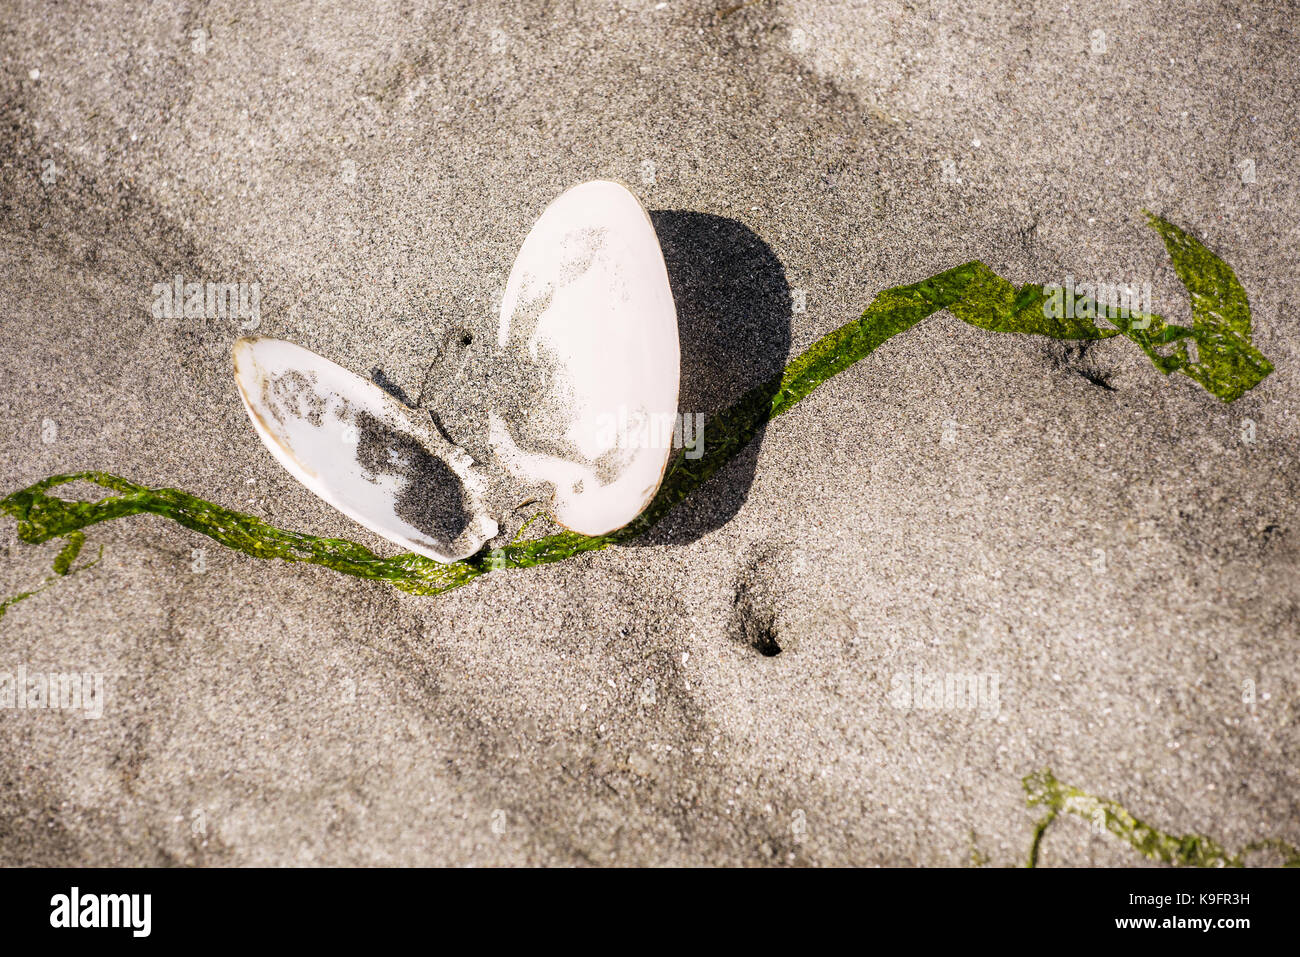 Im Sand gelegen, dieses zarte Schale gleicht einem ruhenden Schmetterling. Whidbey Island, Washington State. Stockfoto